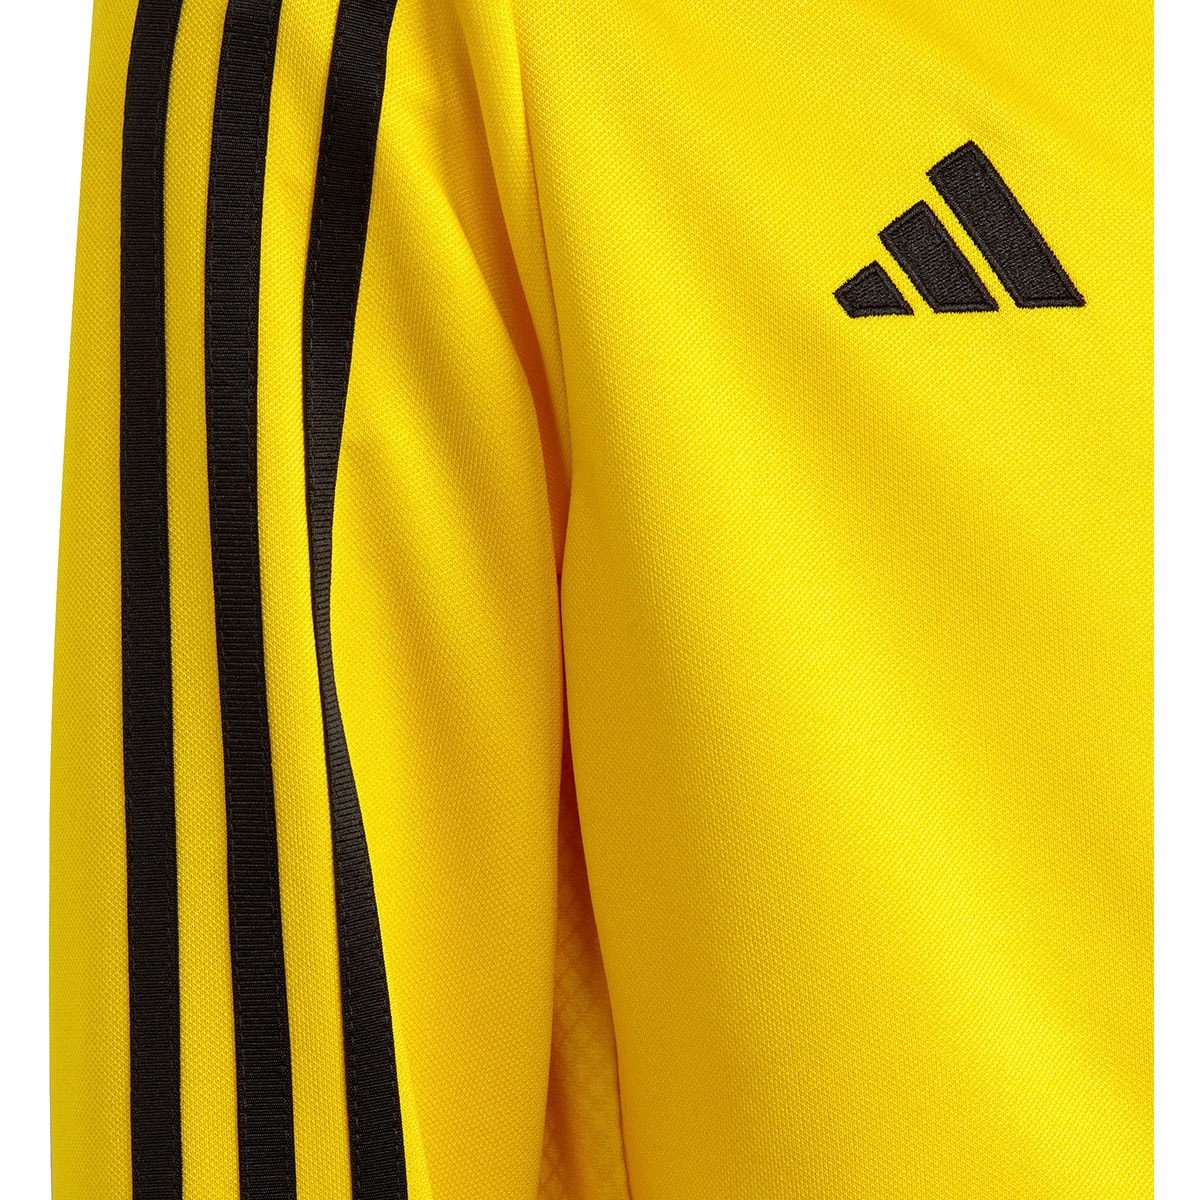 Adidas Kinder Trainingsjacke Tiro 23 gelb